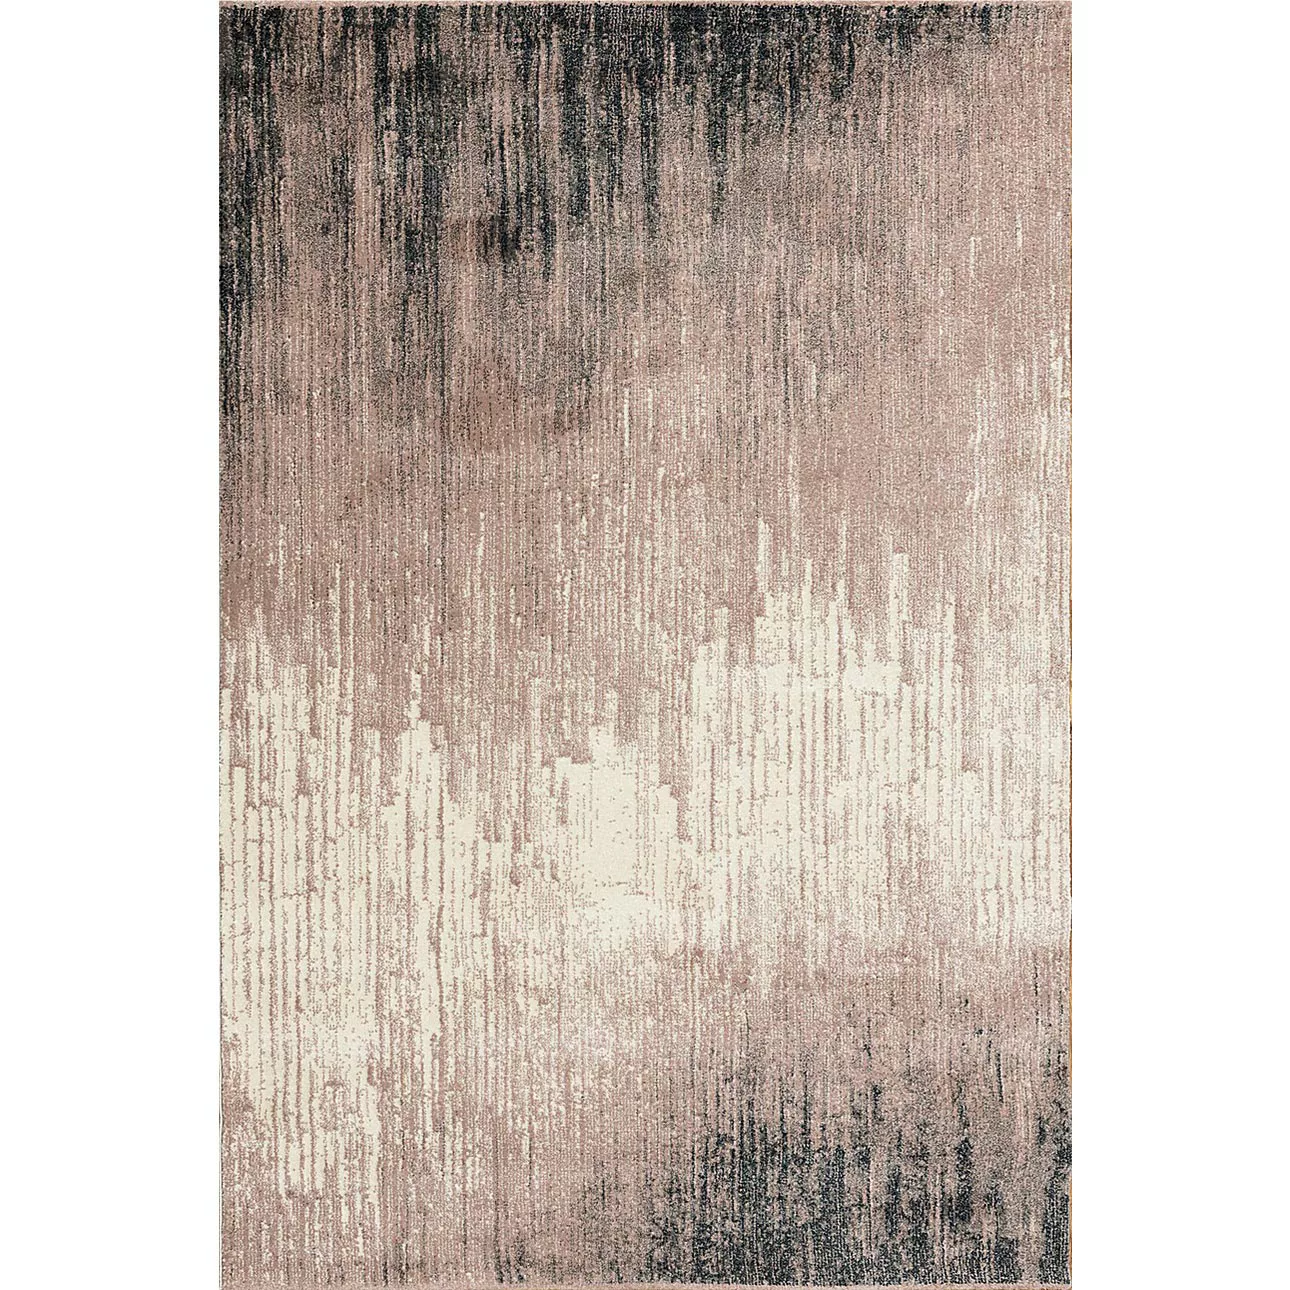 Teppich Sevilla paper white/dusty rose 160x230cm, 160 x 230 cm günstig online kaufen